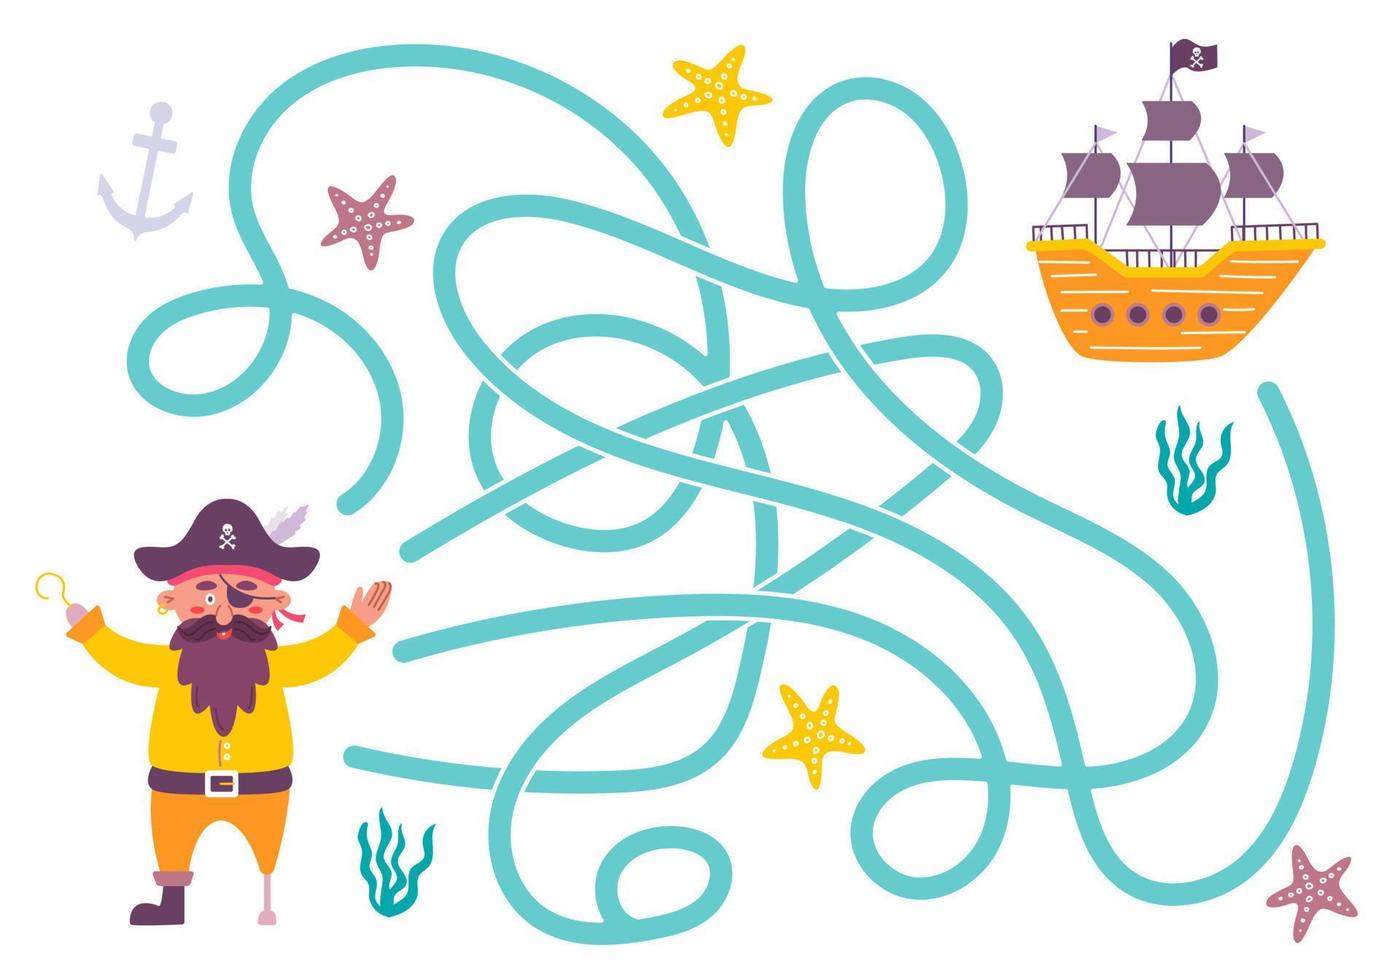 laberinto, ayuda al pirata a encontrar el camino correcto hacia el barco. búsqueda lógica para los niños. linda ilustración para libros infantiles, juego educativo vector